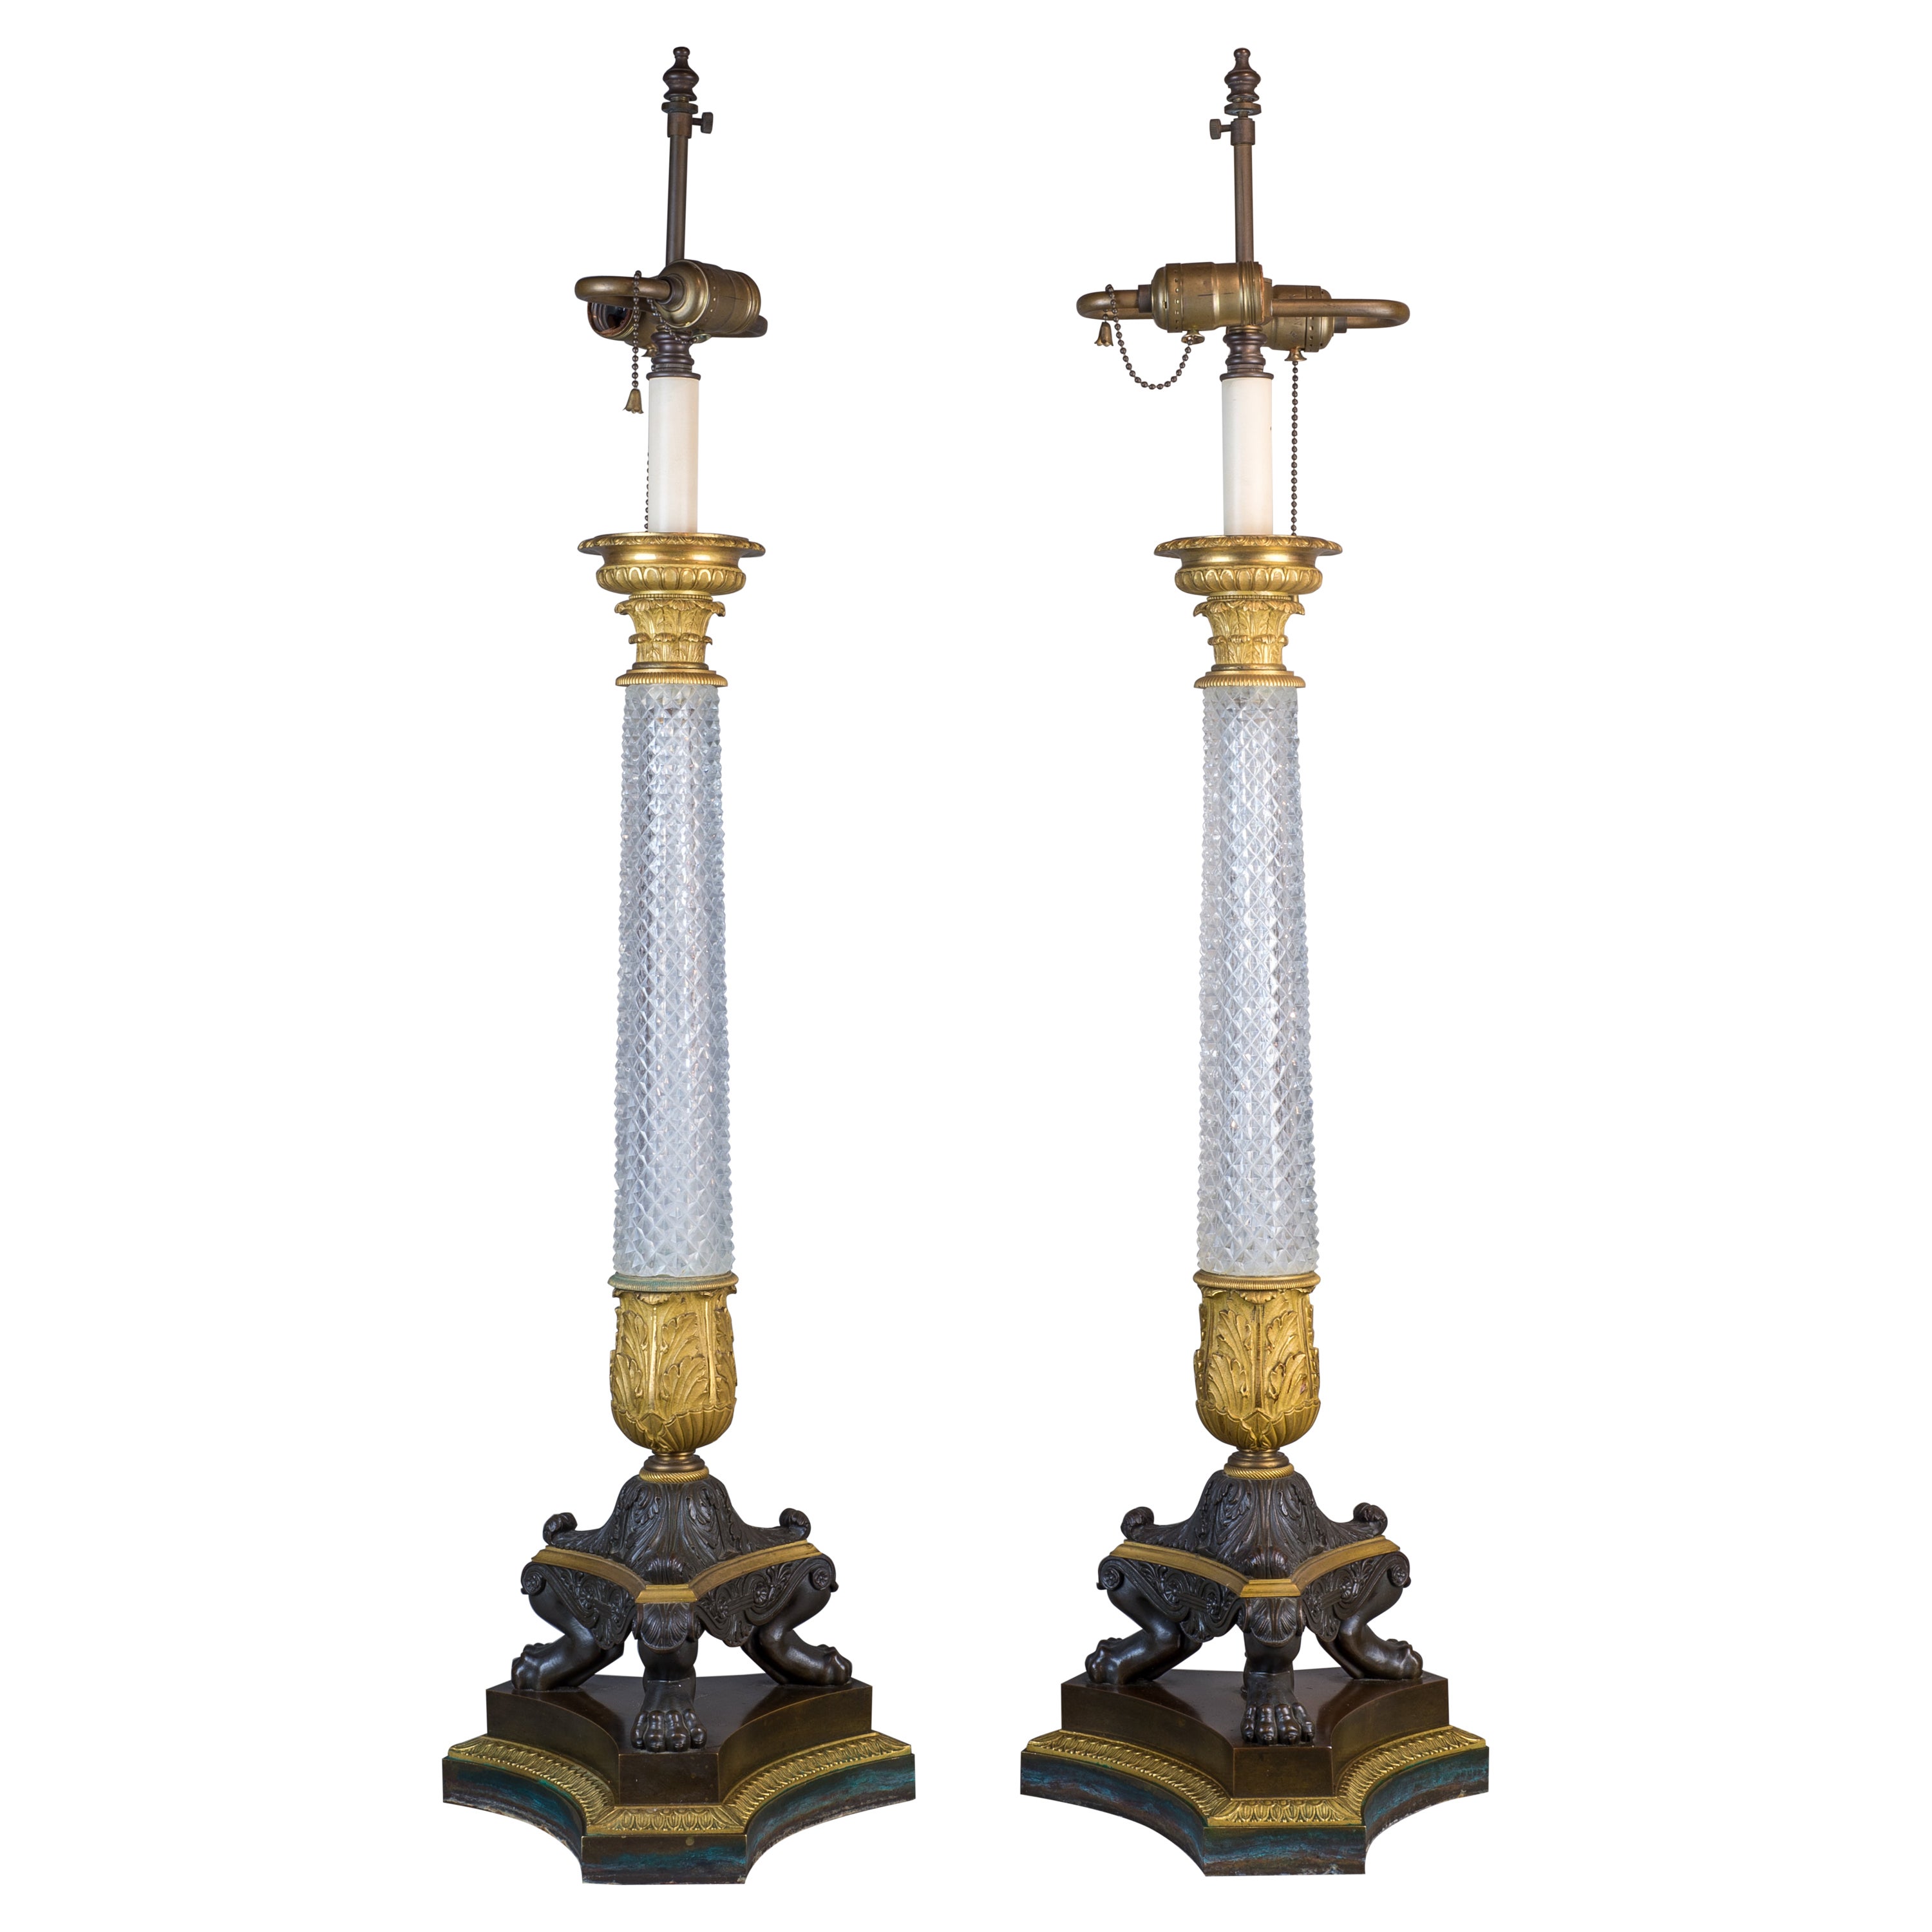 Paire de lampes en cristal taillé de qualité supérieure du début de l'Empire, montées sur bronze doré